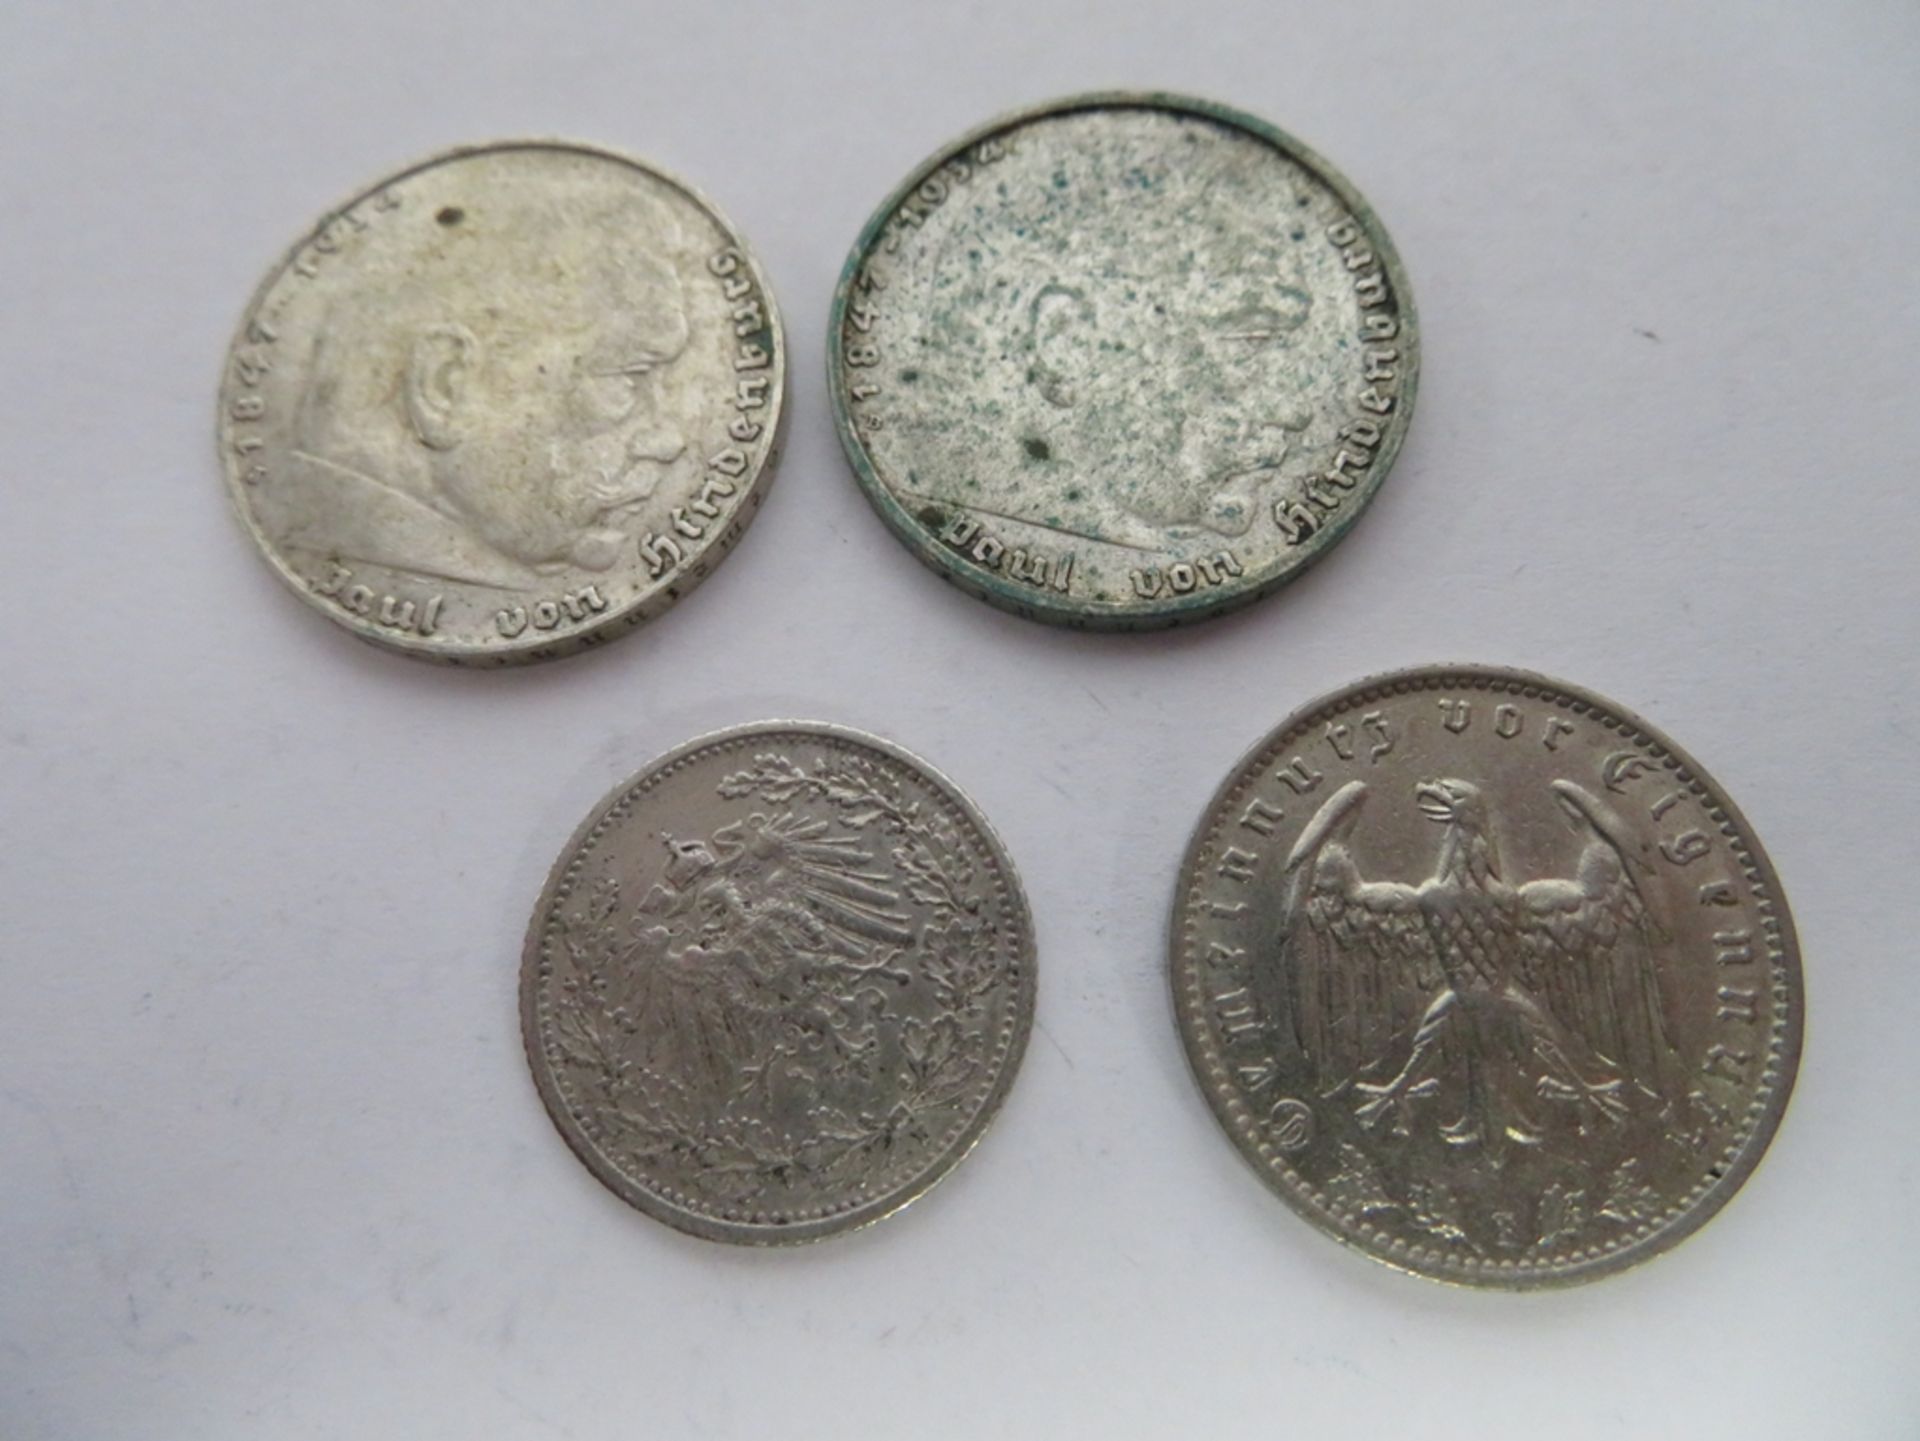 Konvolut von 4 diversen Silbermünzen, 2 x 2 Deutsche Mark, Hindenburg/1 Reichsmark, 1934/1/2 Mark. - Image 2 of 2